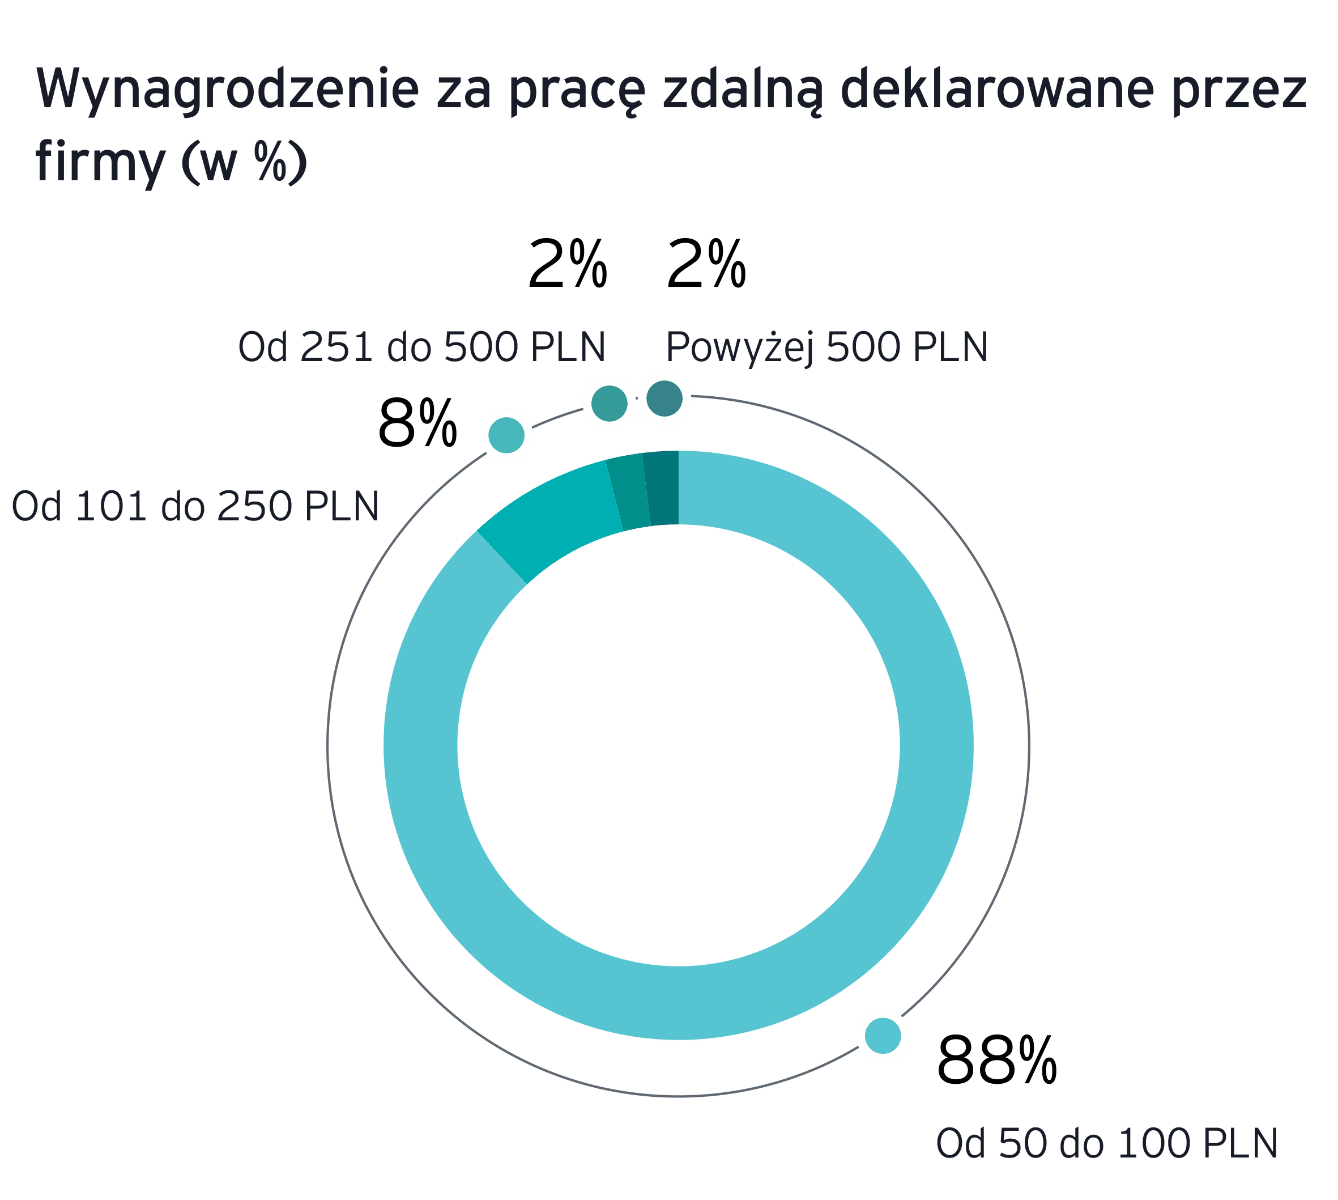 Wyniki badania EY – Praca zdalna po polsku 2